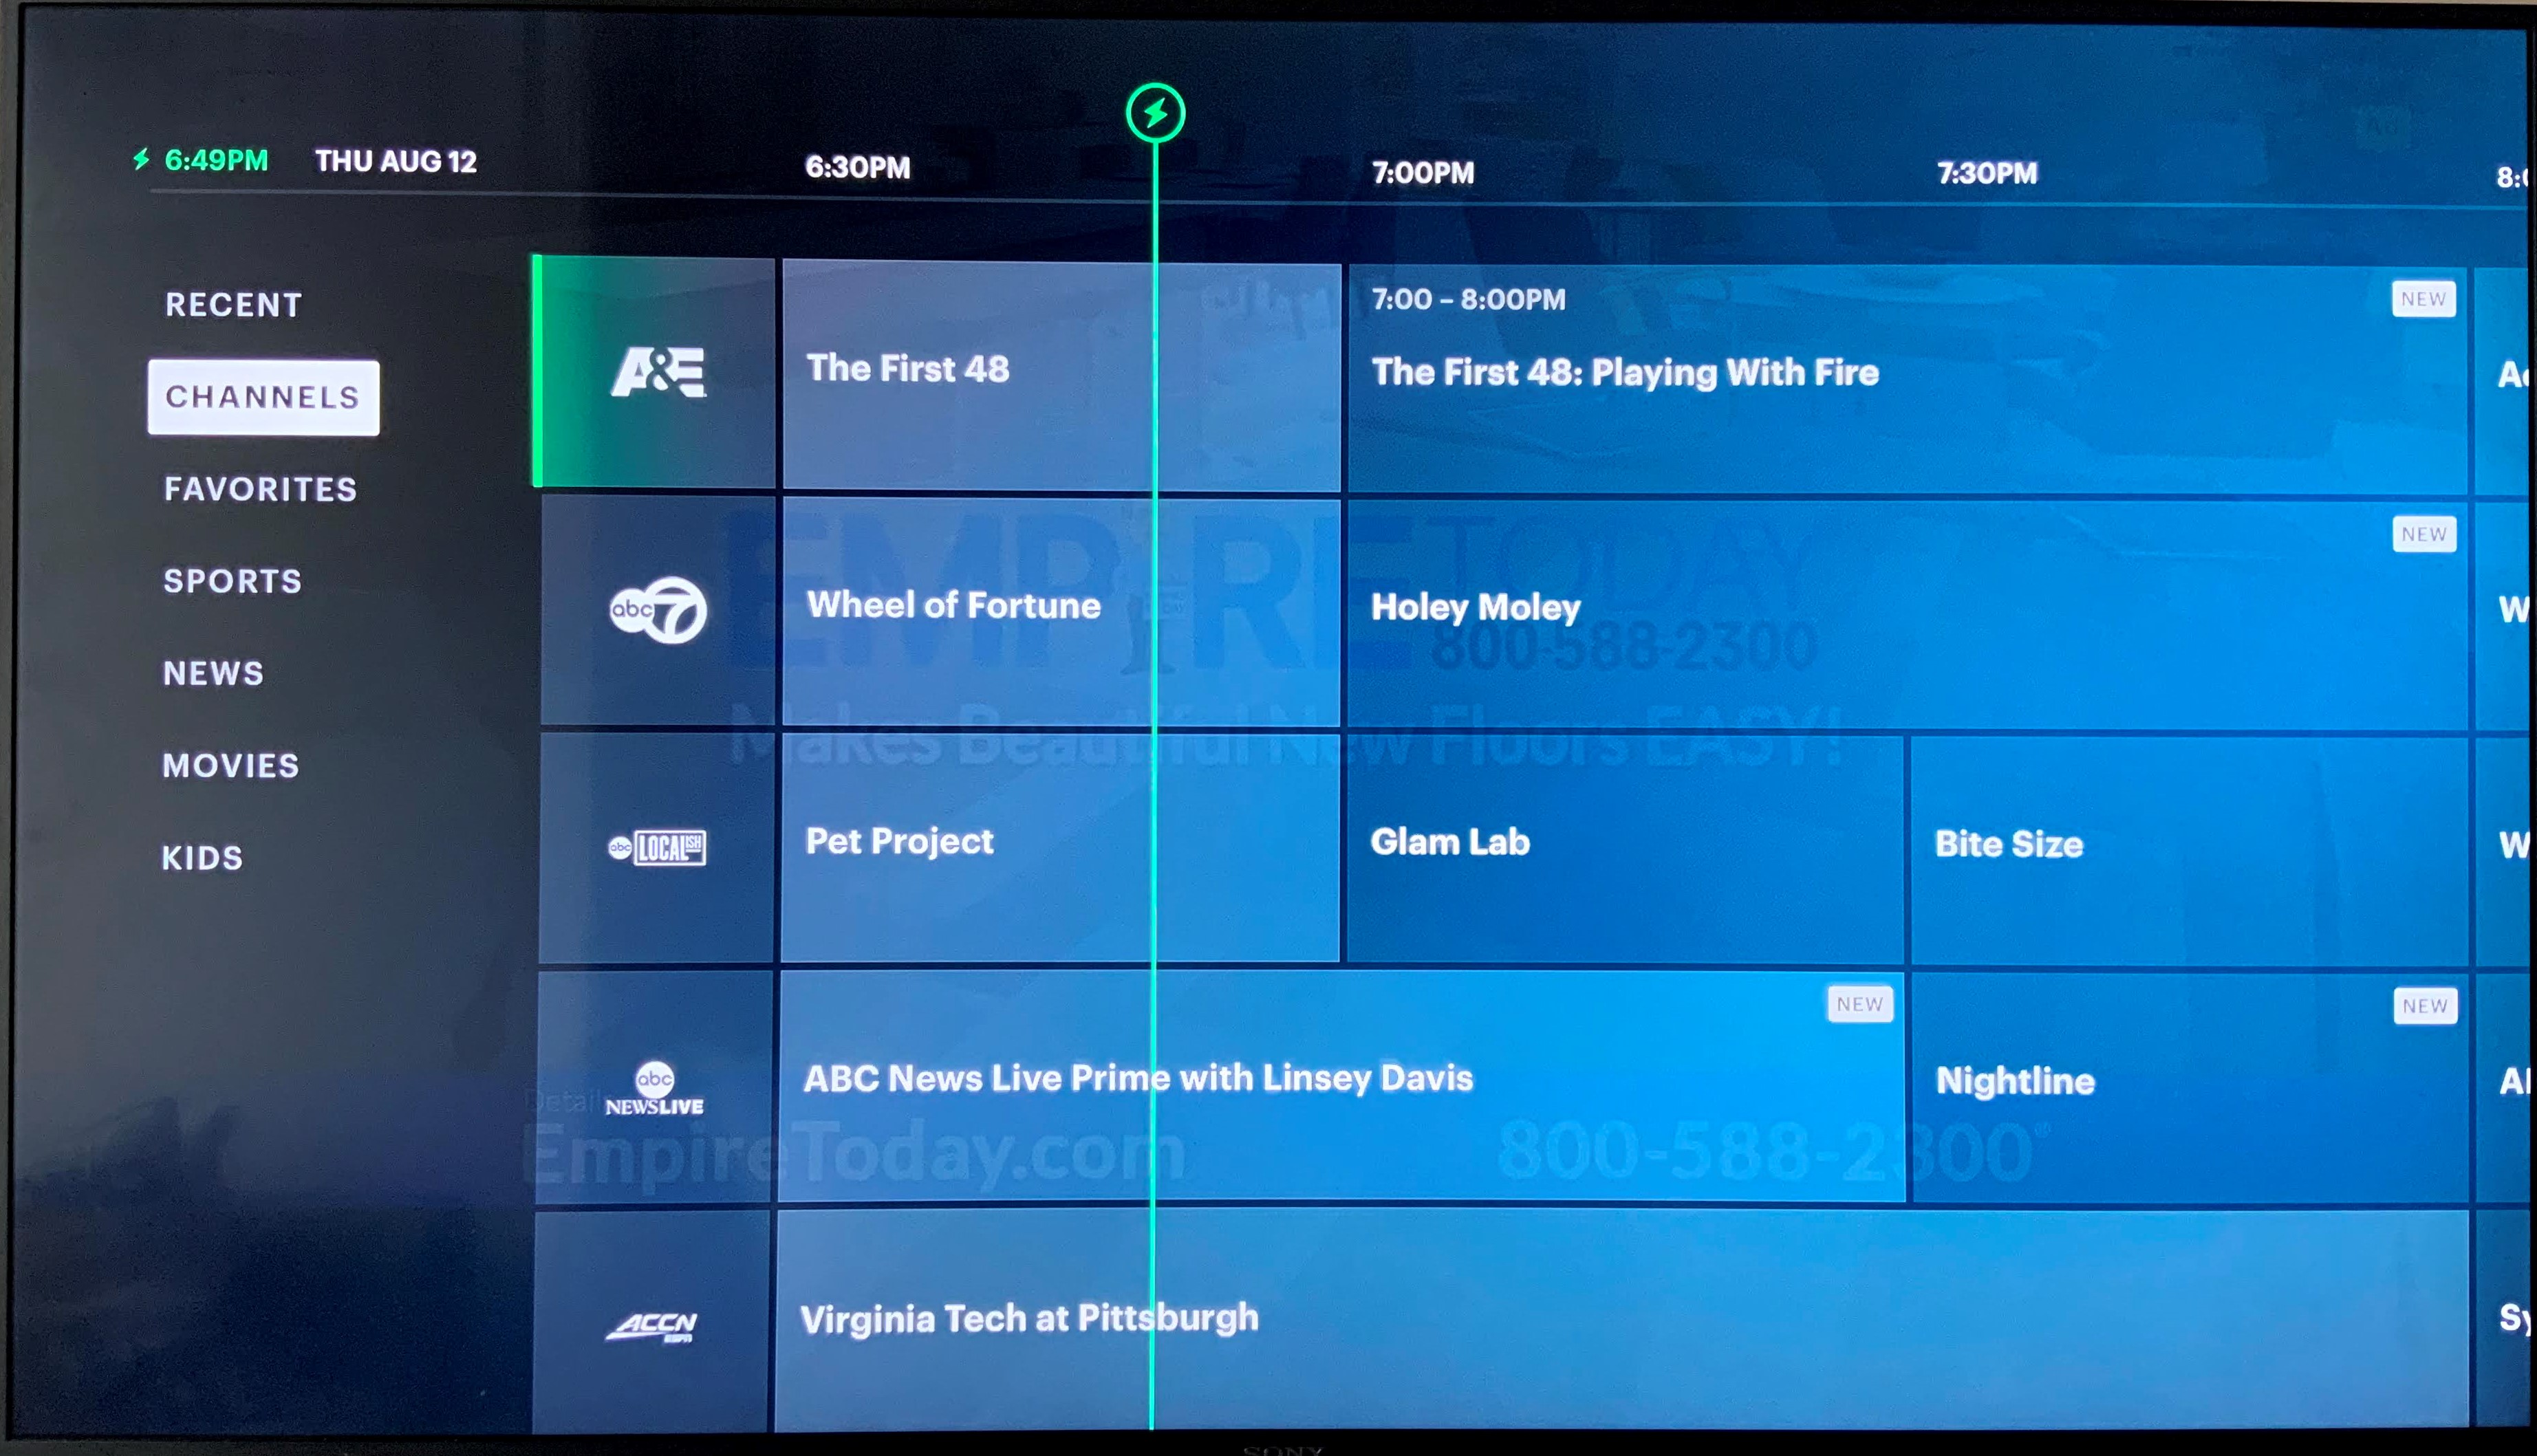 Jak se dostanu do živé televize na Hulu v mé televizi?